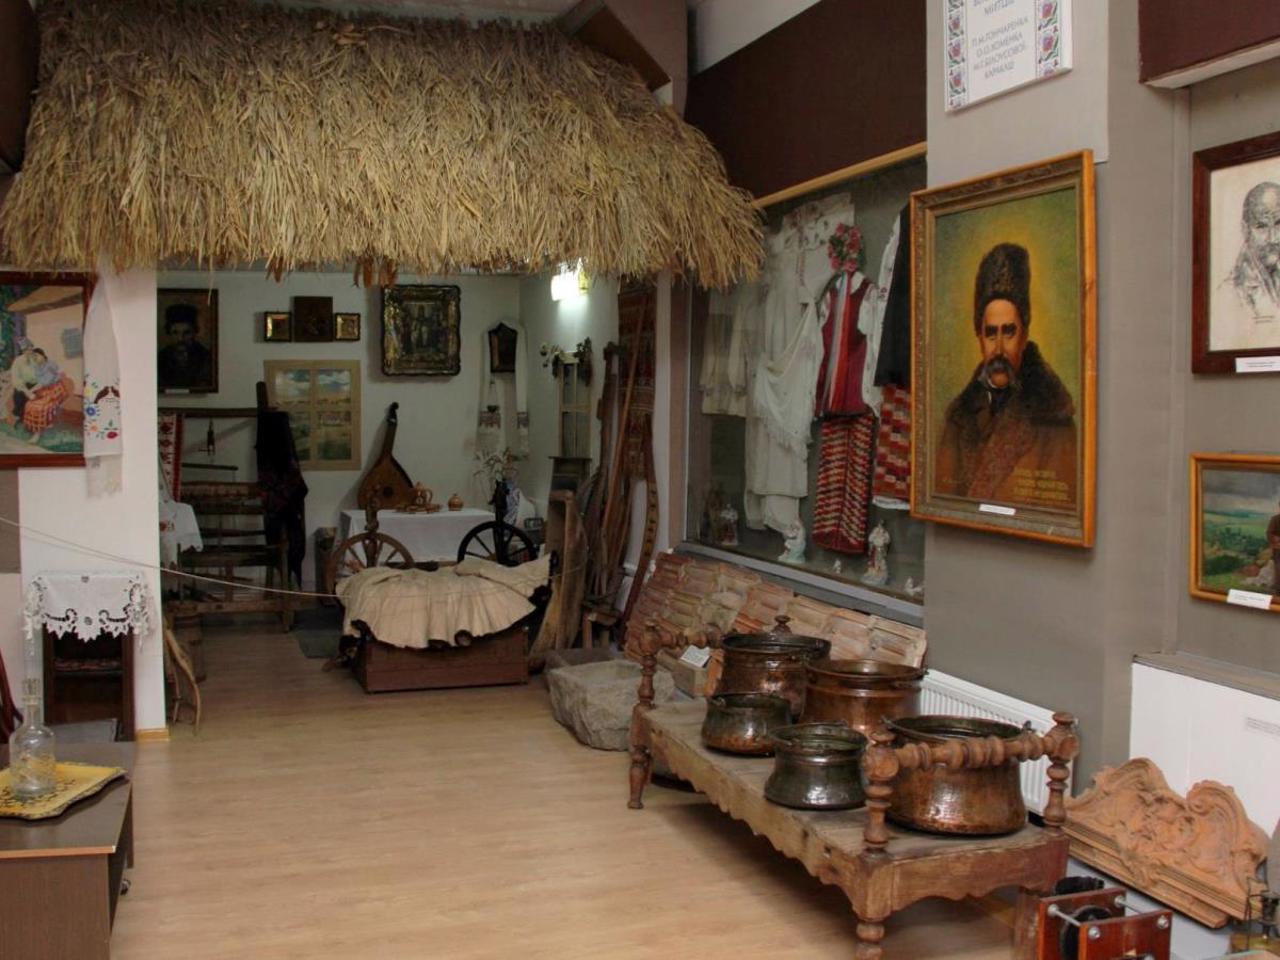 Berdiansk Museum of Local Lore